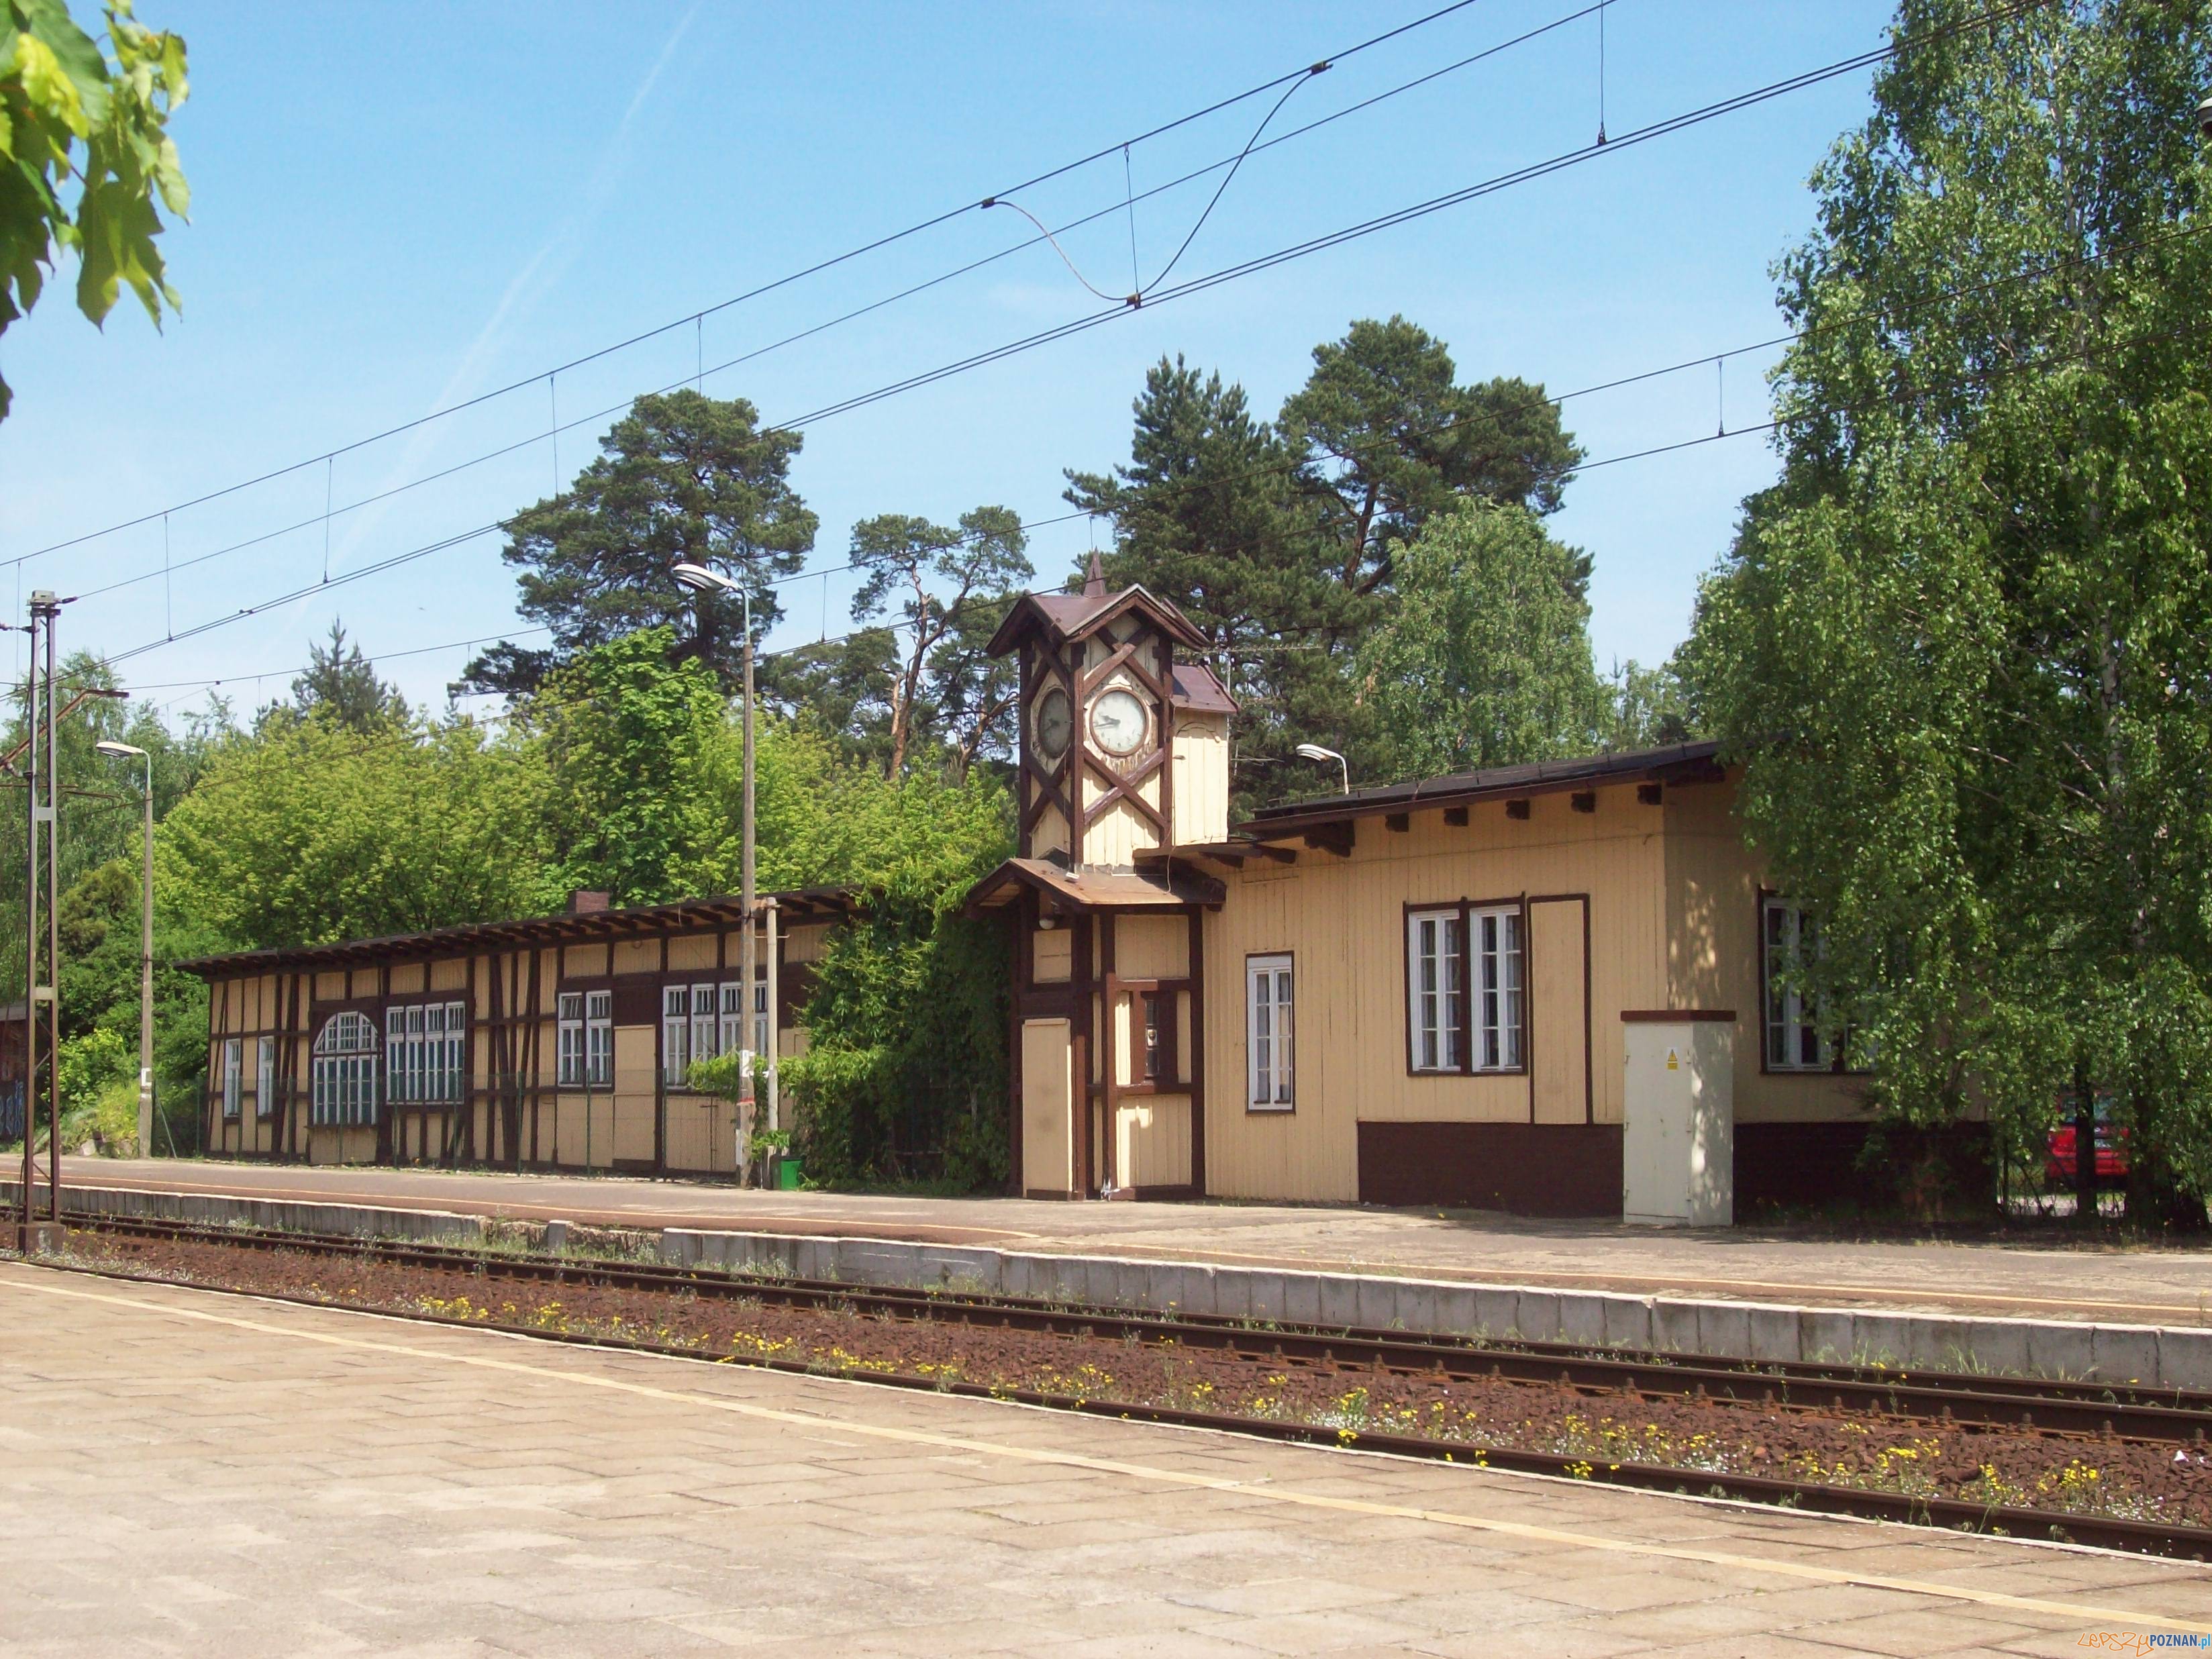 Dworzec PKP w Puszczykowie  Foto: Midhir / wikipedia / CC